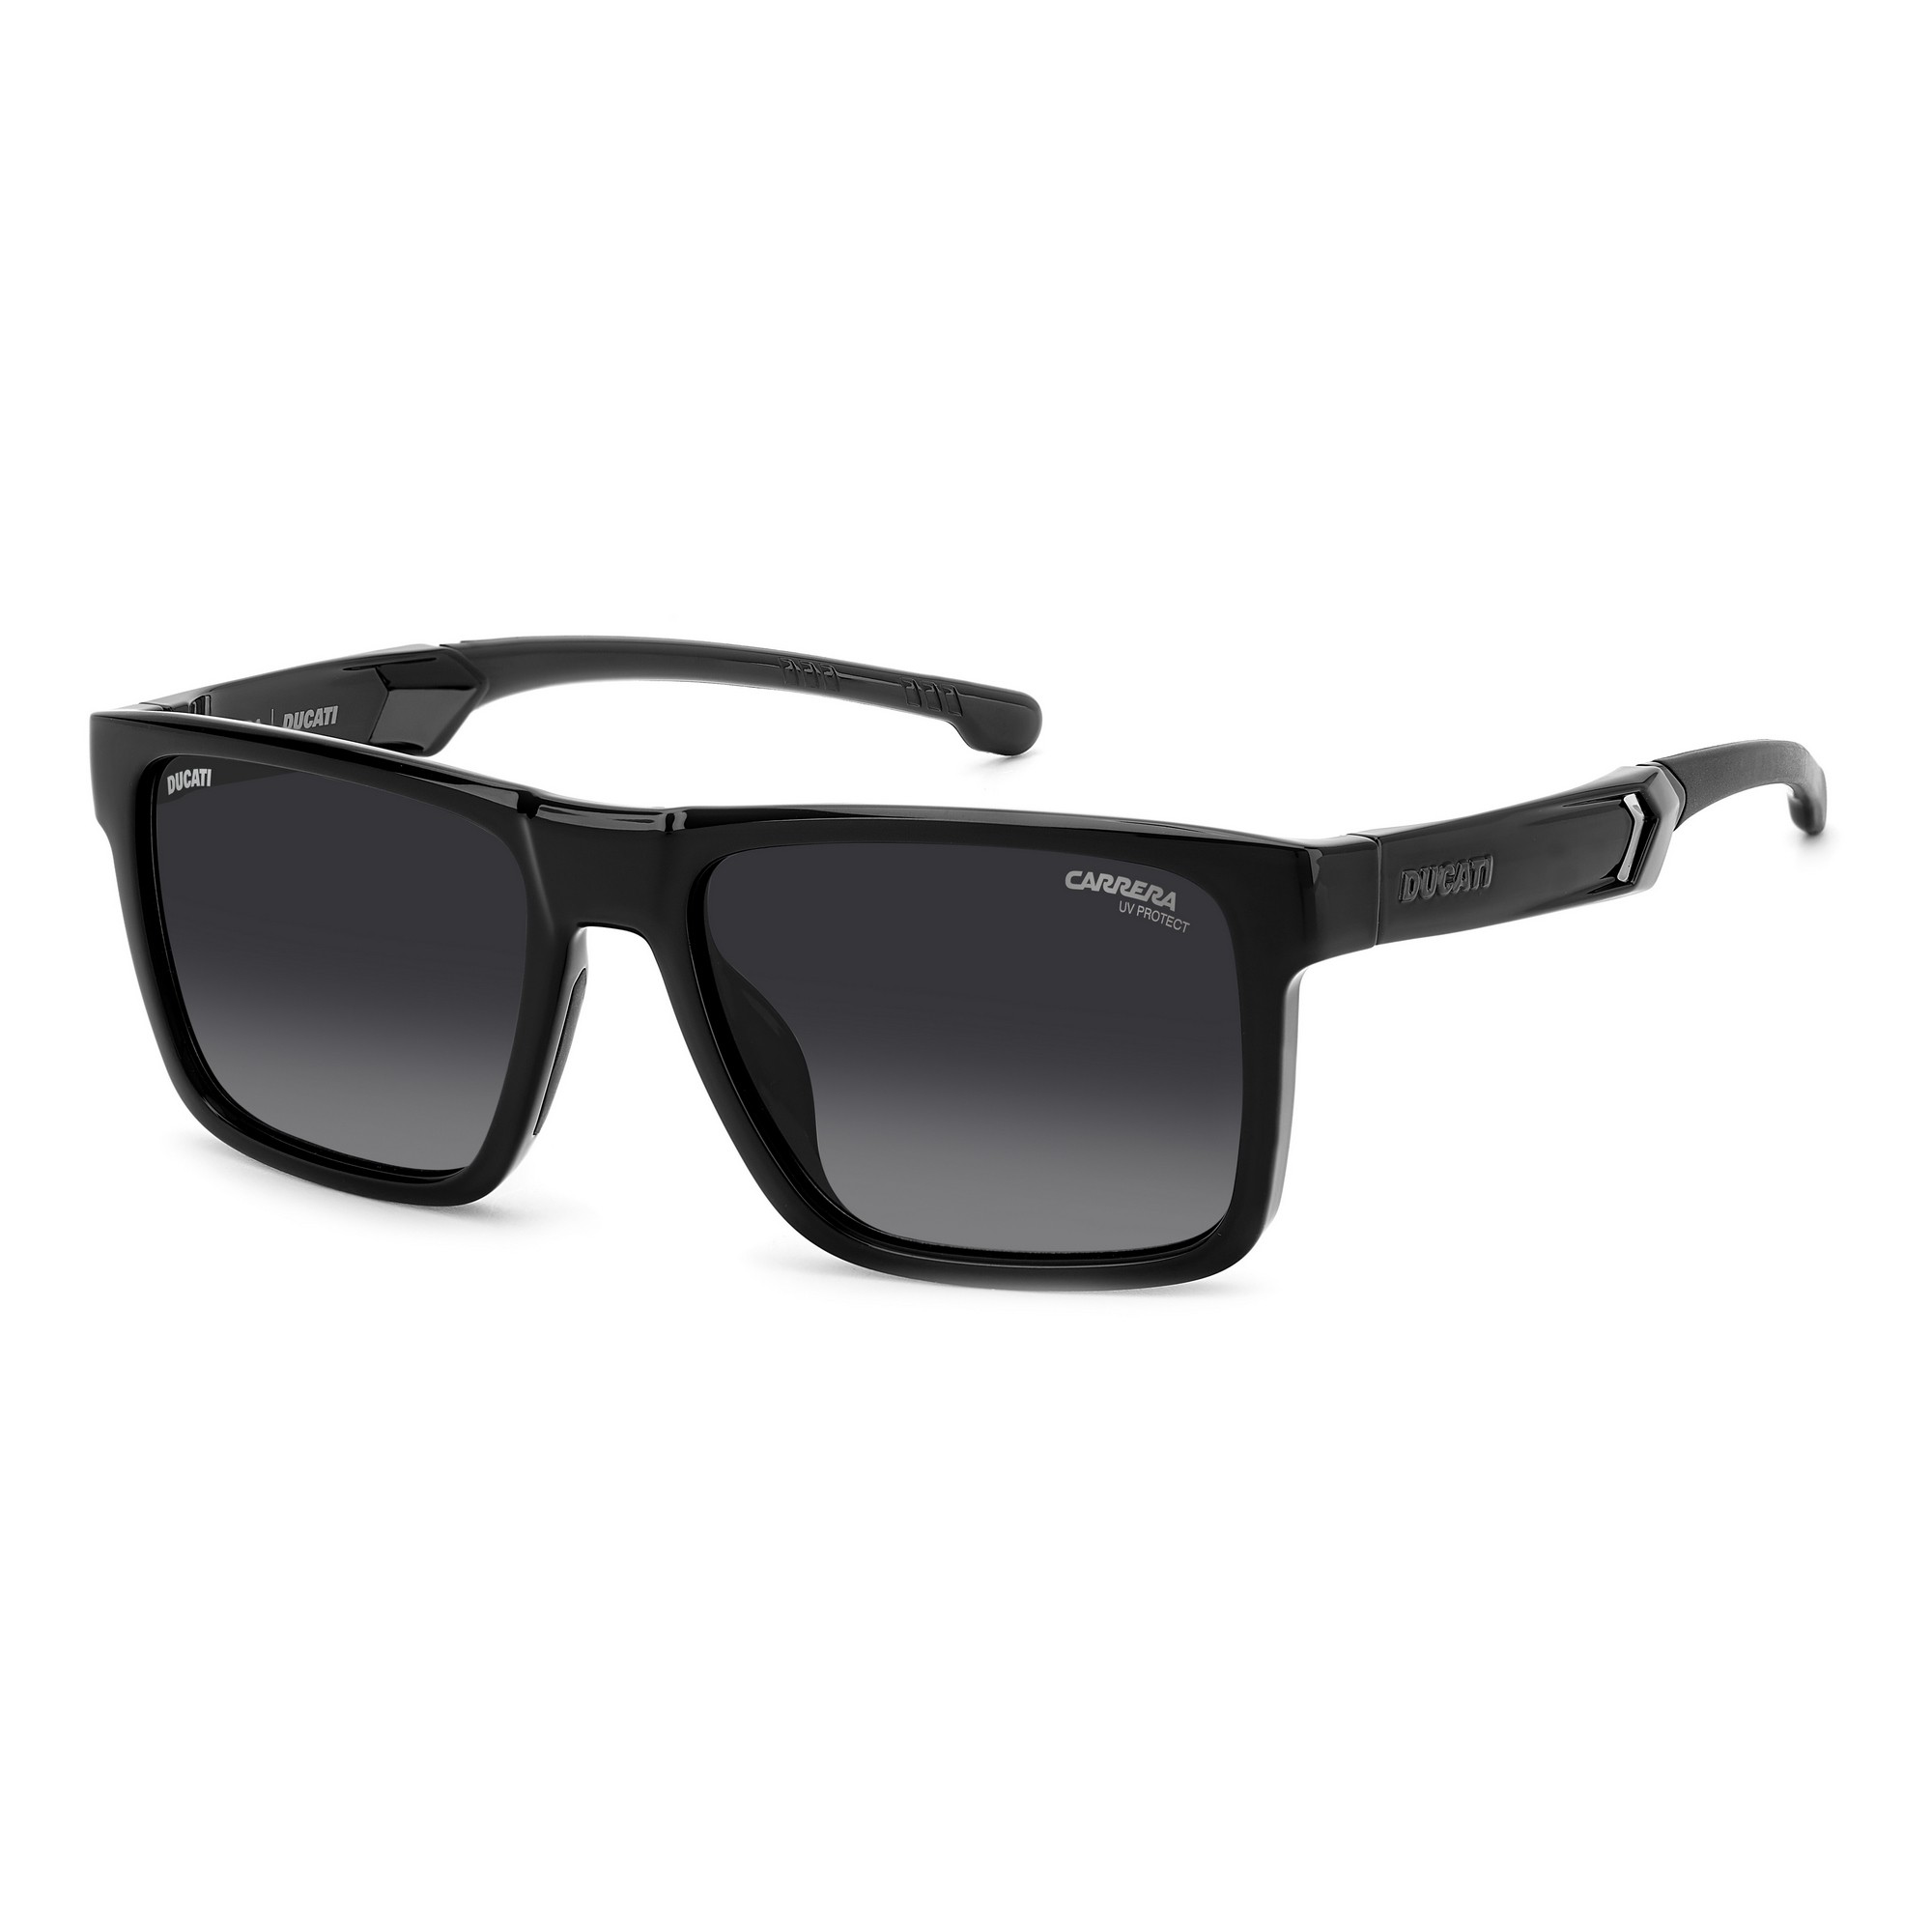 Carrera Ducati UV Protect Sunglasses Black 021/S 807 - زين للنظارات